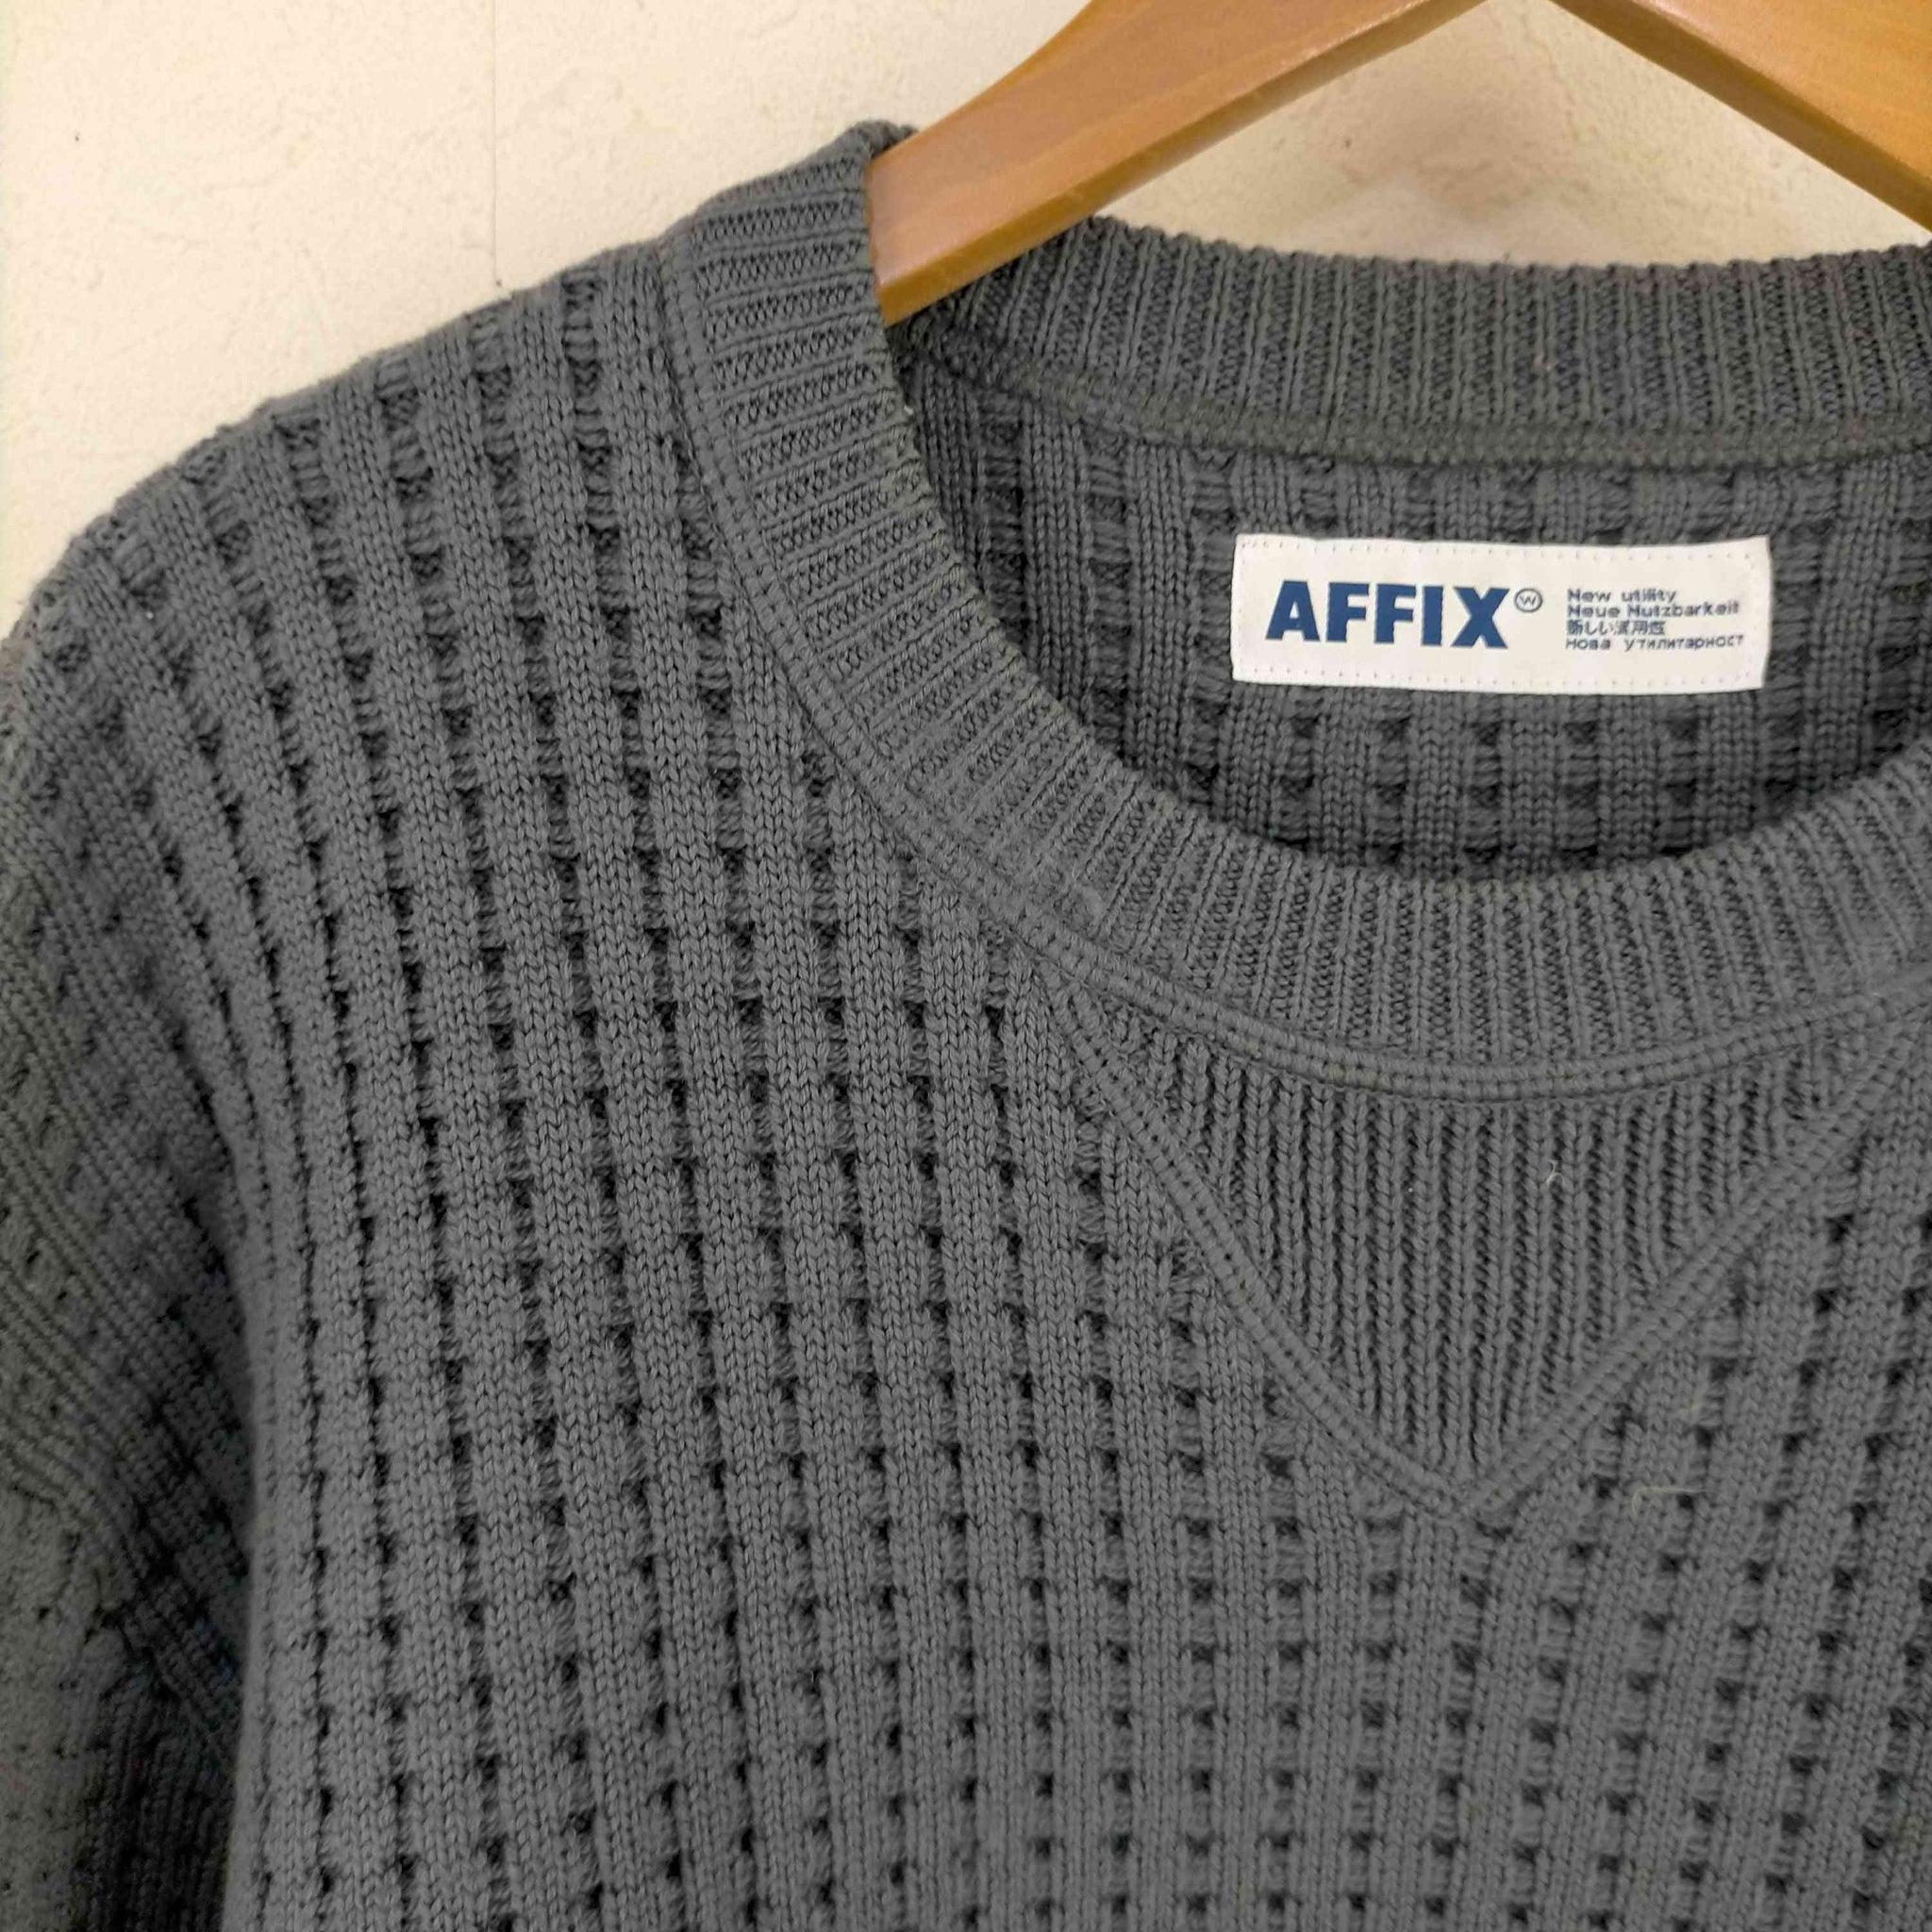 AFFIX(アフィックス)メリノウール ワッフルニット セーター